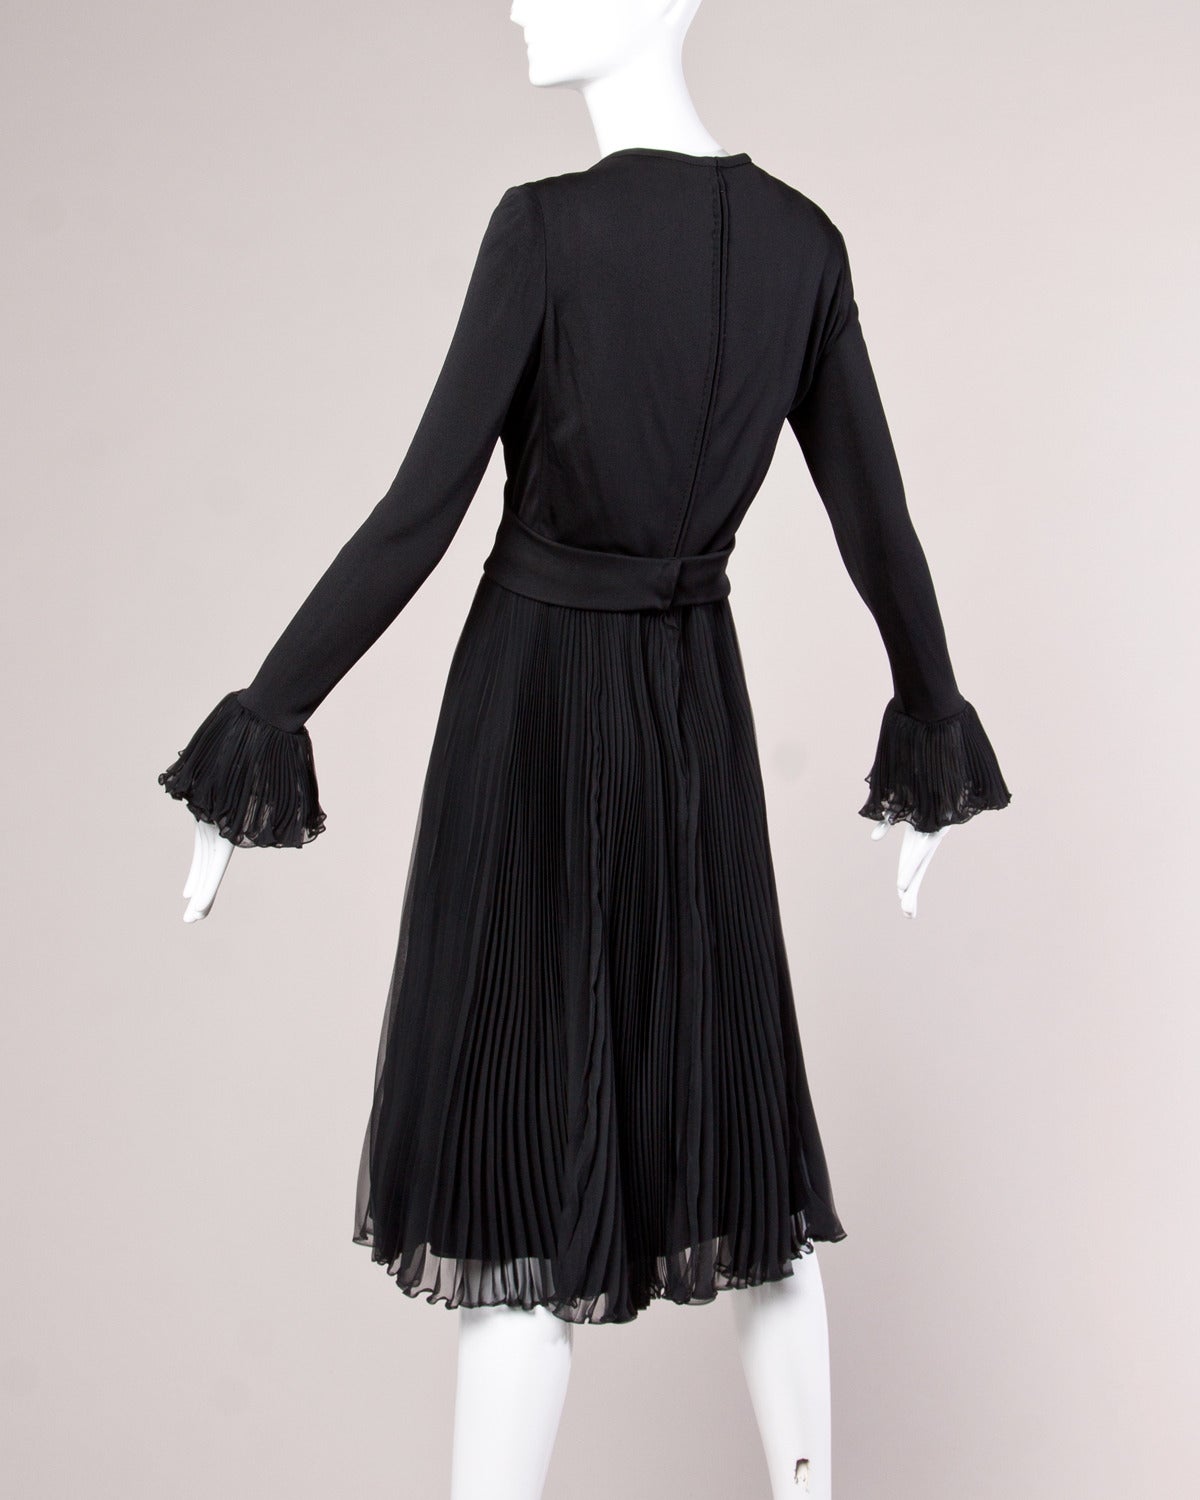 Magnifique robe de haute couture datée du 12 août 1970 par Ric McClintock. Le corsage est composé de ce qui ressemble à du jersey de soie. Jupe et bords de manches plissés en accordéon. Boucle de ceinture en strass circulaire de poids lourd. Un